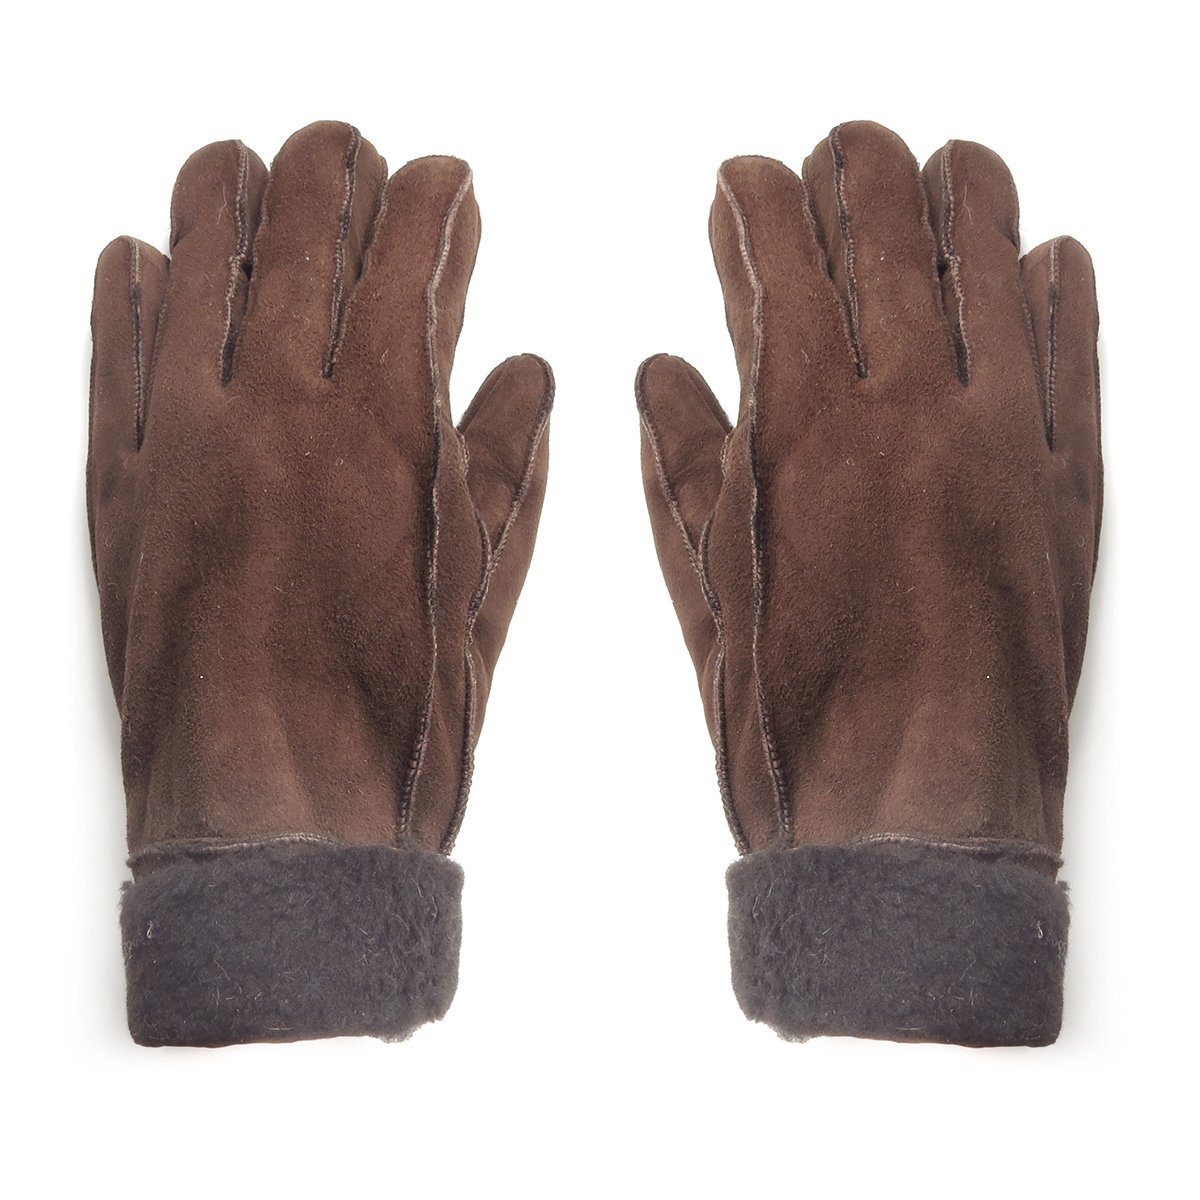 Sonia Originelli Winter-Arbeitshandschuhe Handschuhe aus Lammfell Schaffell unisex hochwertig warm Farben können abweichen, Struktur des Fells kann abweichen dunkelbraun